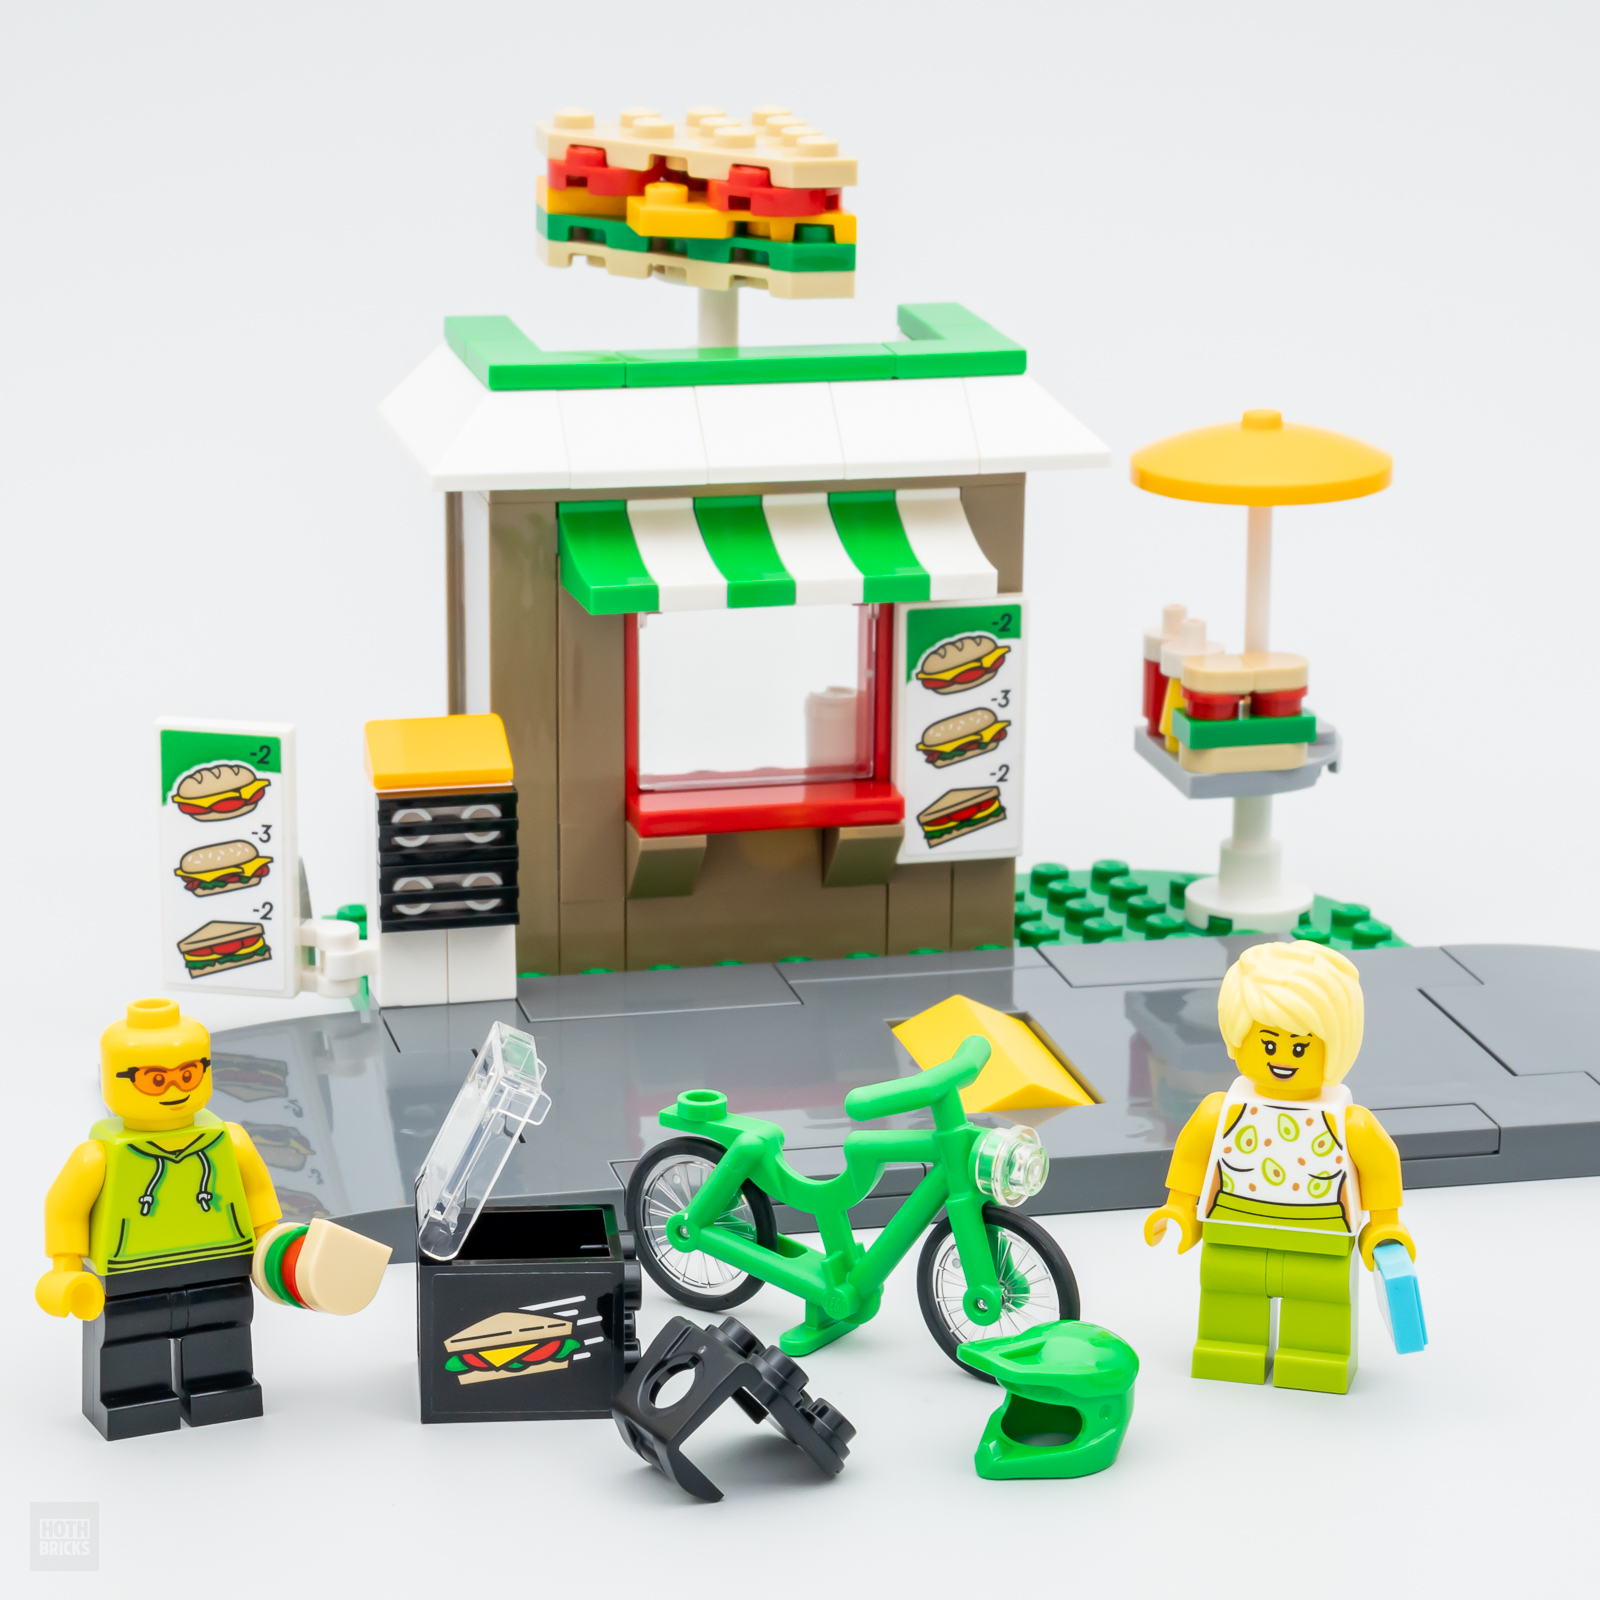 LEGO veikalā: LEGO CITY 40578 sviestmaižu veikala komplekts ir bez maksas, ja pirkums pārsniedz €90